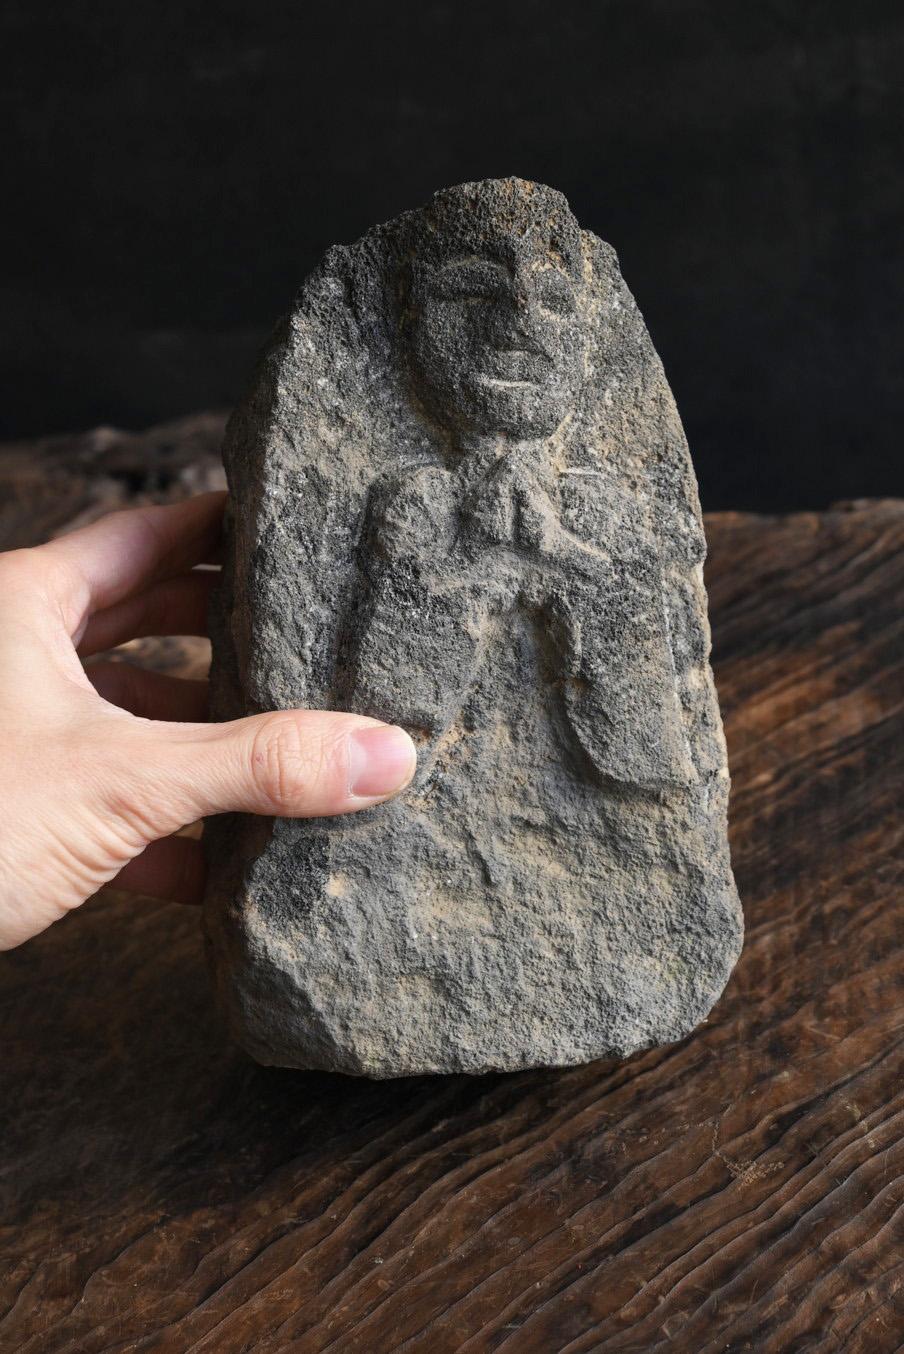 Il s'agit d'un petit bouddha en pierre fabriqué après le milieu de la période Edo au Japon.
Il s'agit d'un type de statue de bouddha appelé Calle au Japon. C'est l'un des bodhisattvas dans le monde du bouddhisme.
C'est un être qui sauve les hommes